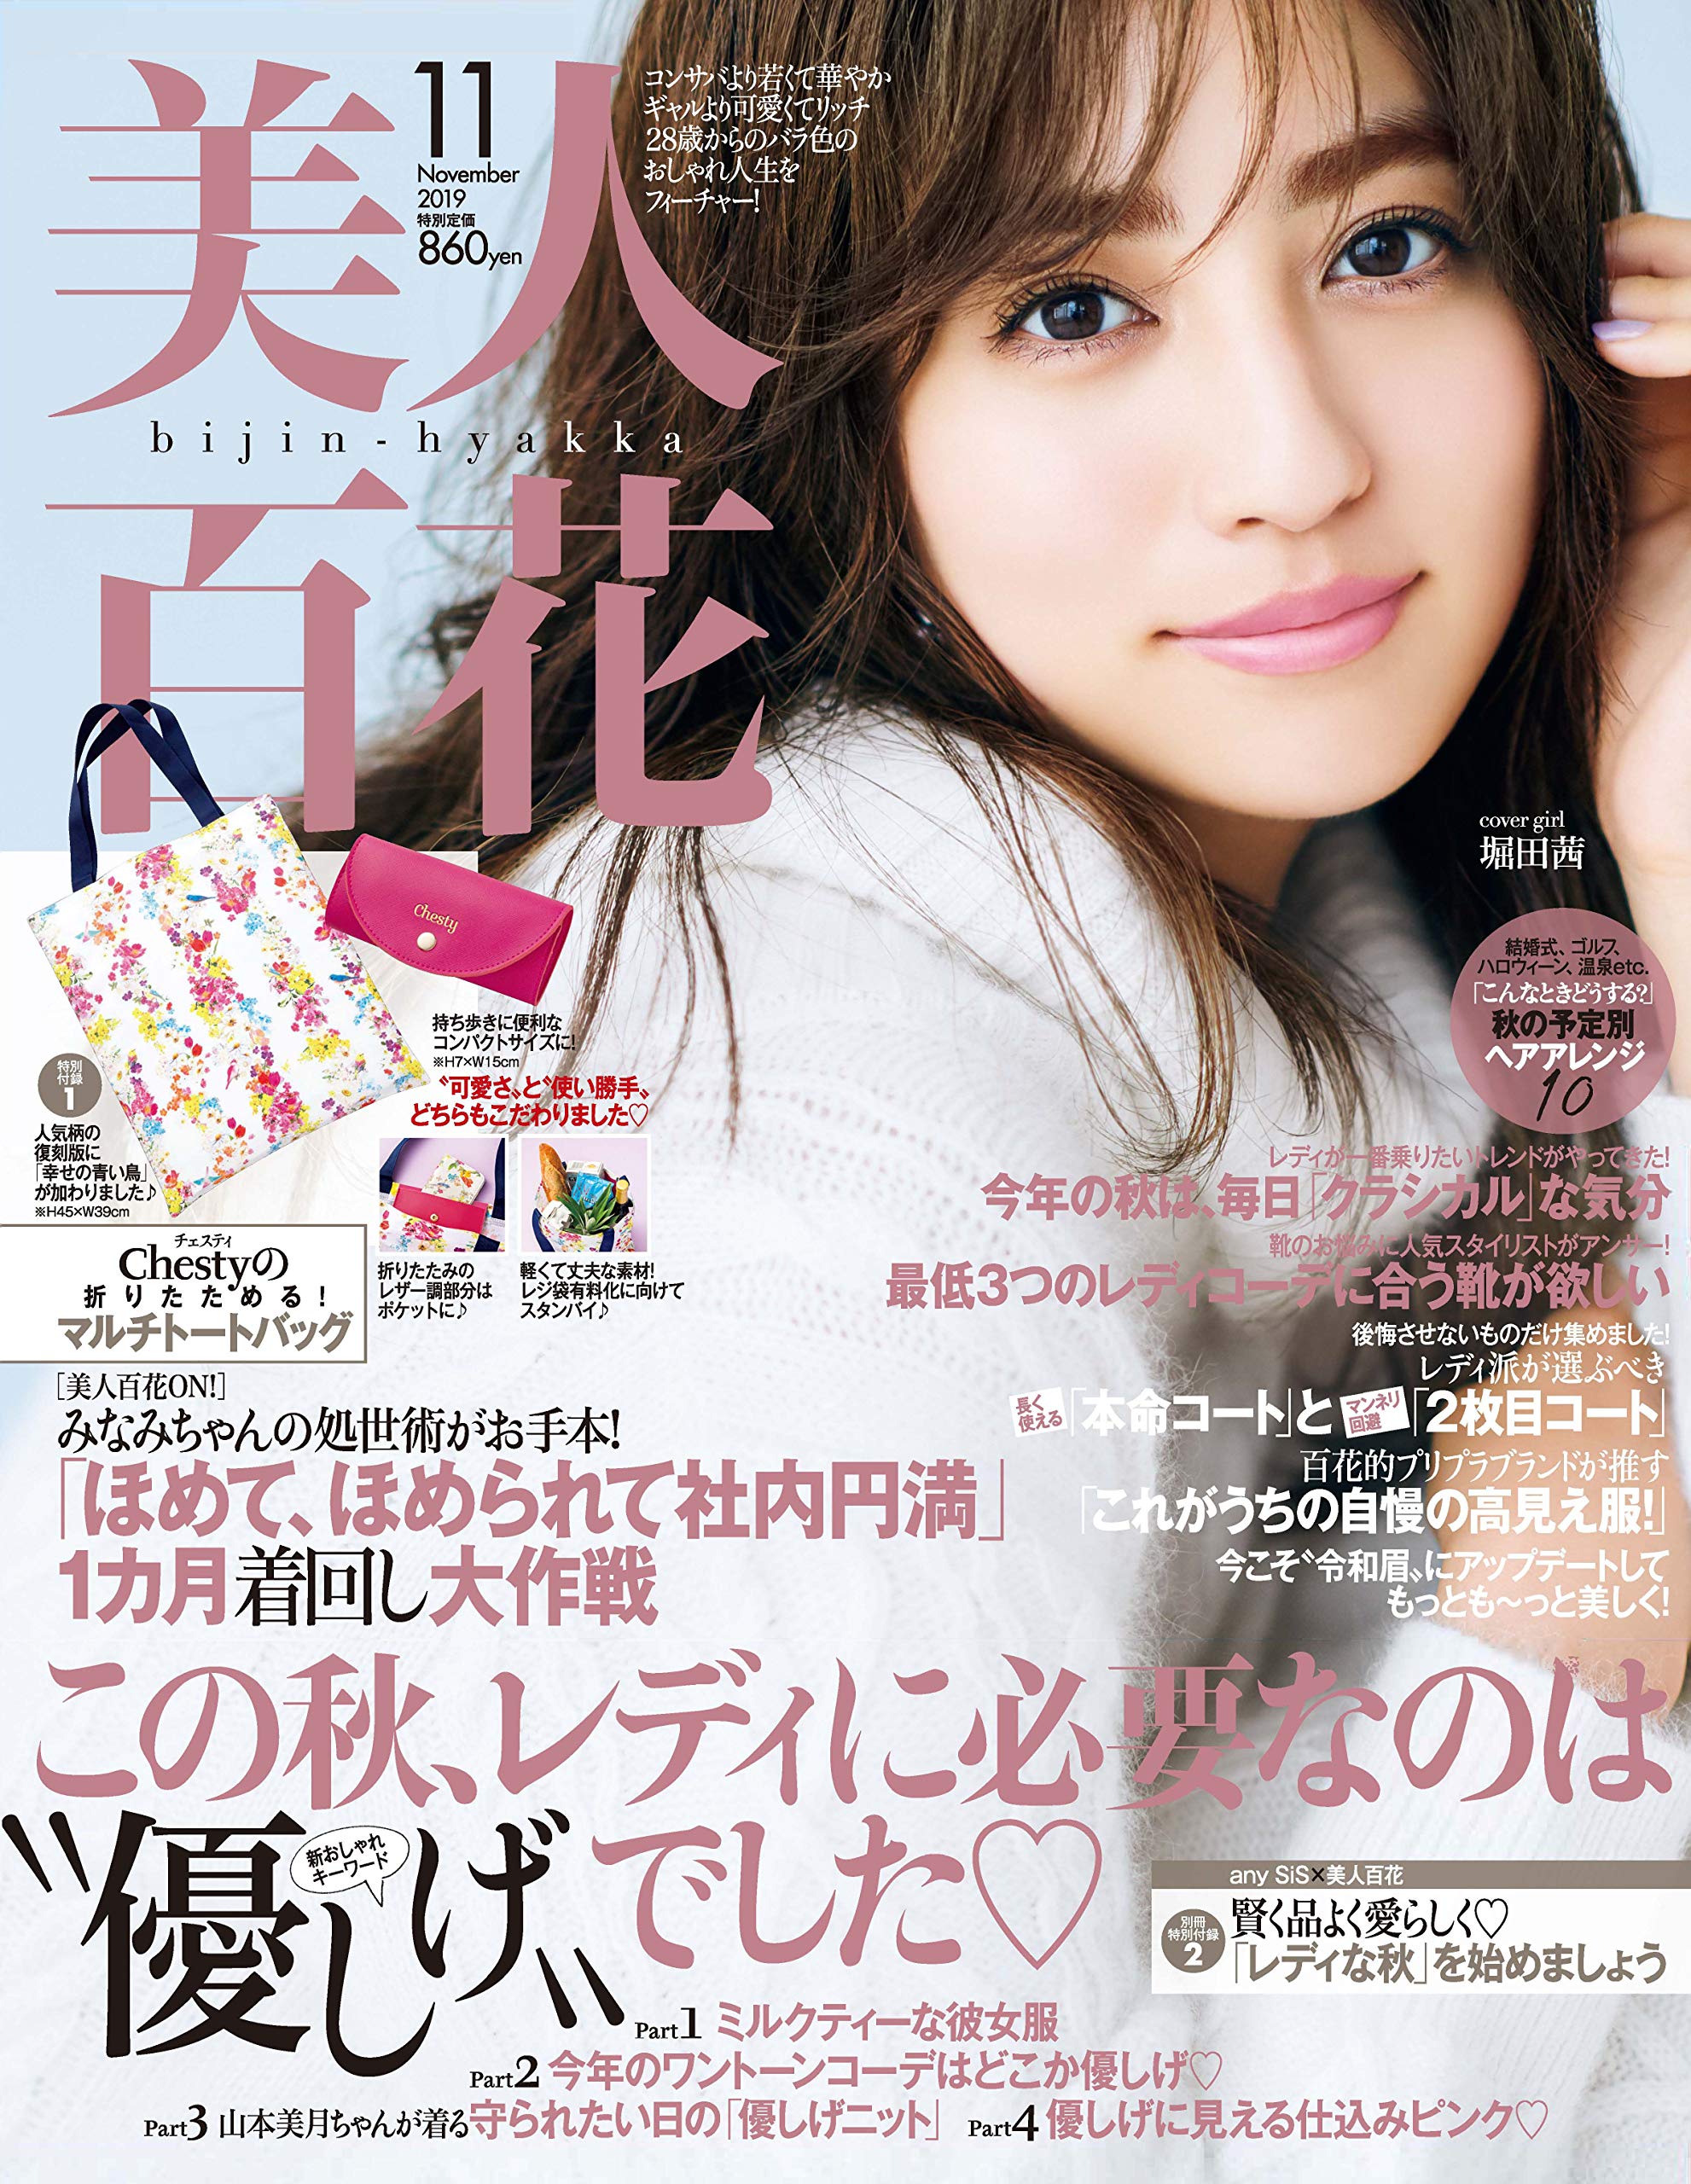 10月12日(土)発売 角川春樹事務所『美人百花11月号』にジョレンクリームブリーチを掲載して頂きました。